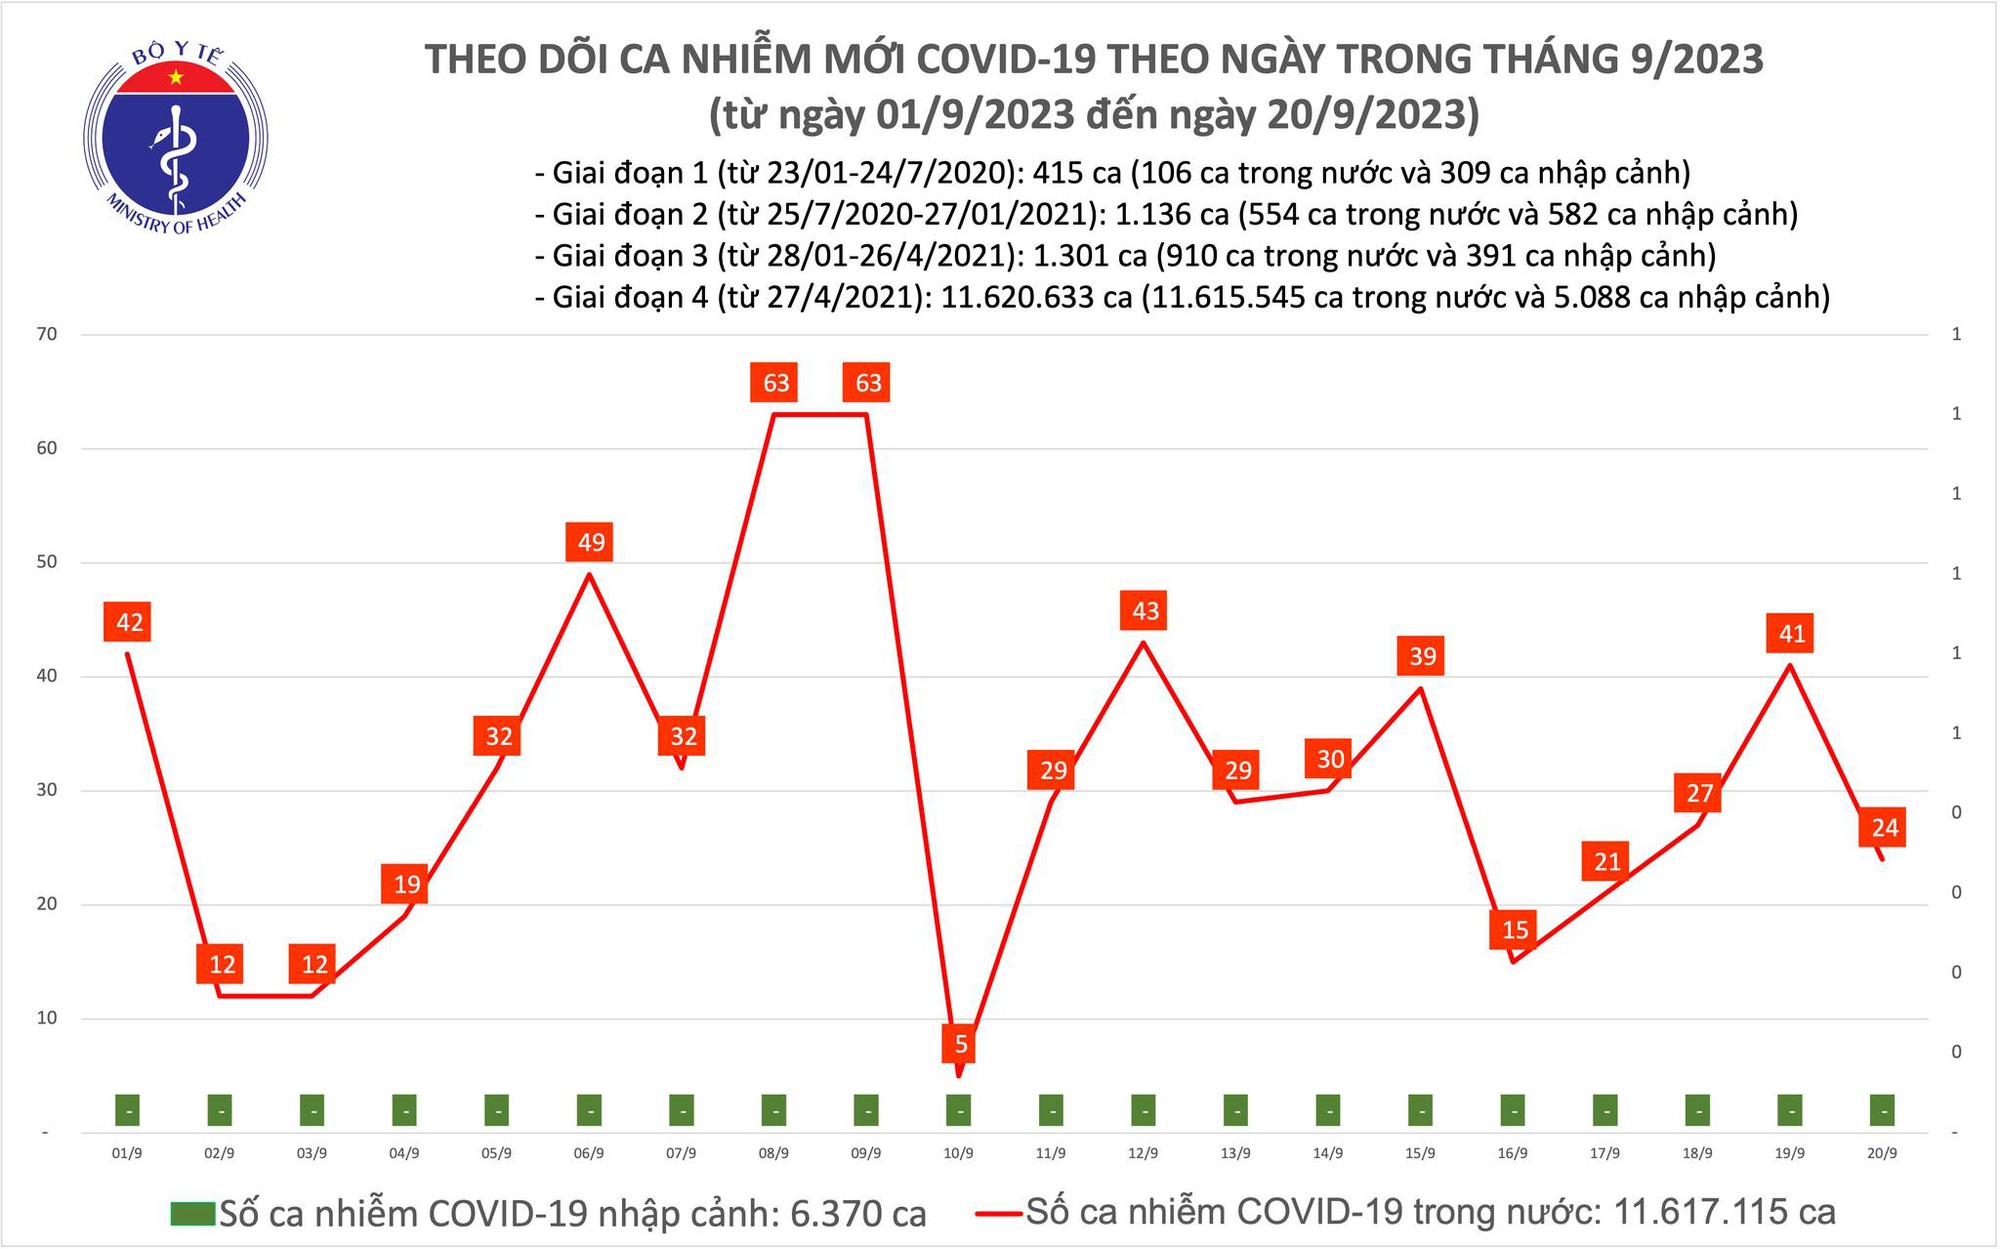 Ngày 20/9: Có 24 ca COVID-19 mới - Ảnh 1.